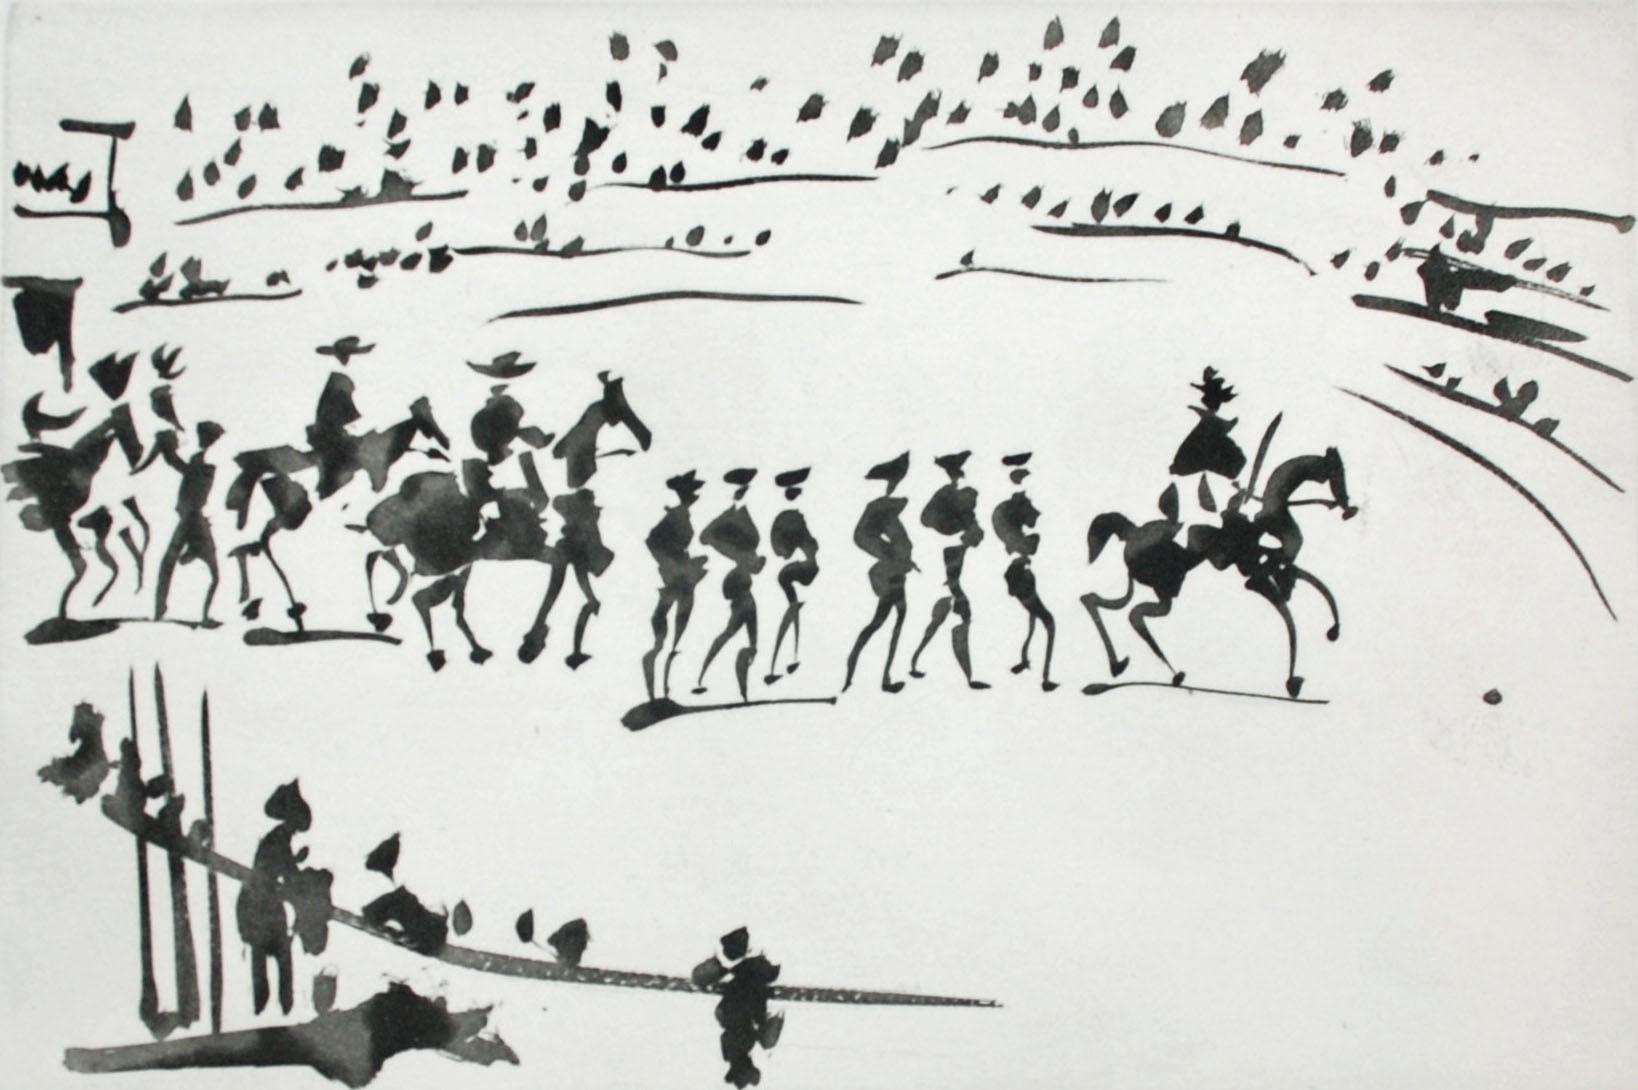 Paseo de Cuadrillas (Ride of the Bullfighting Teams) - Print by Pablo Picasso